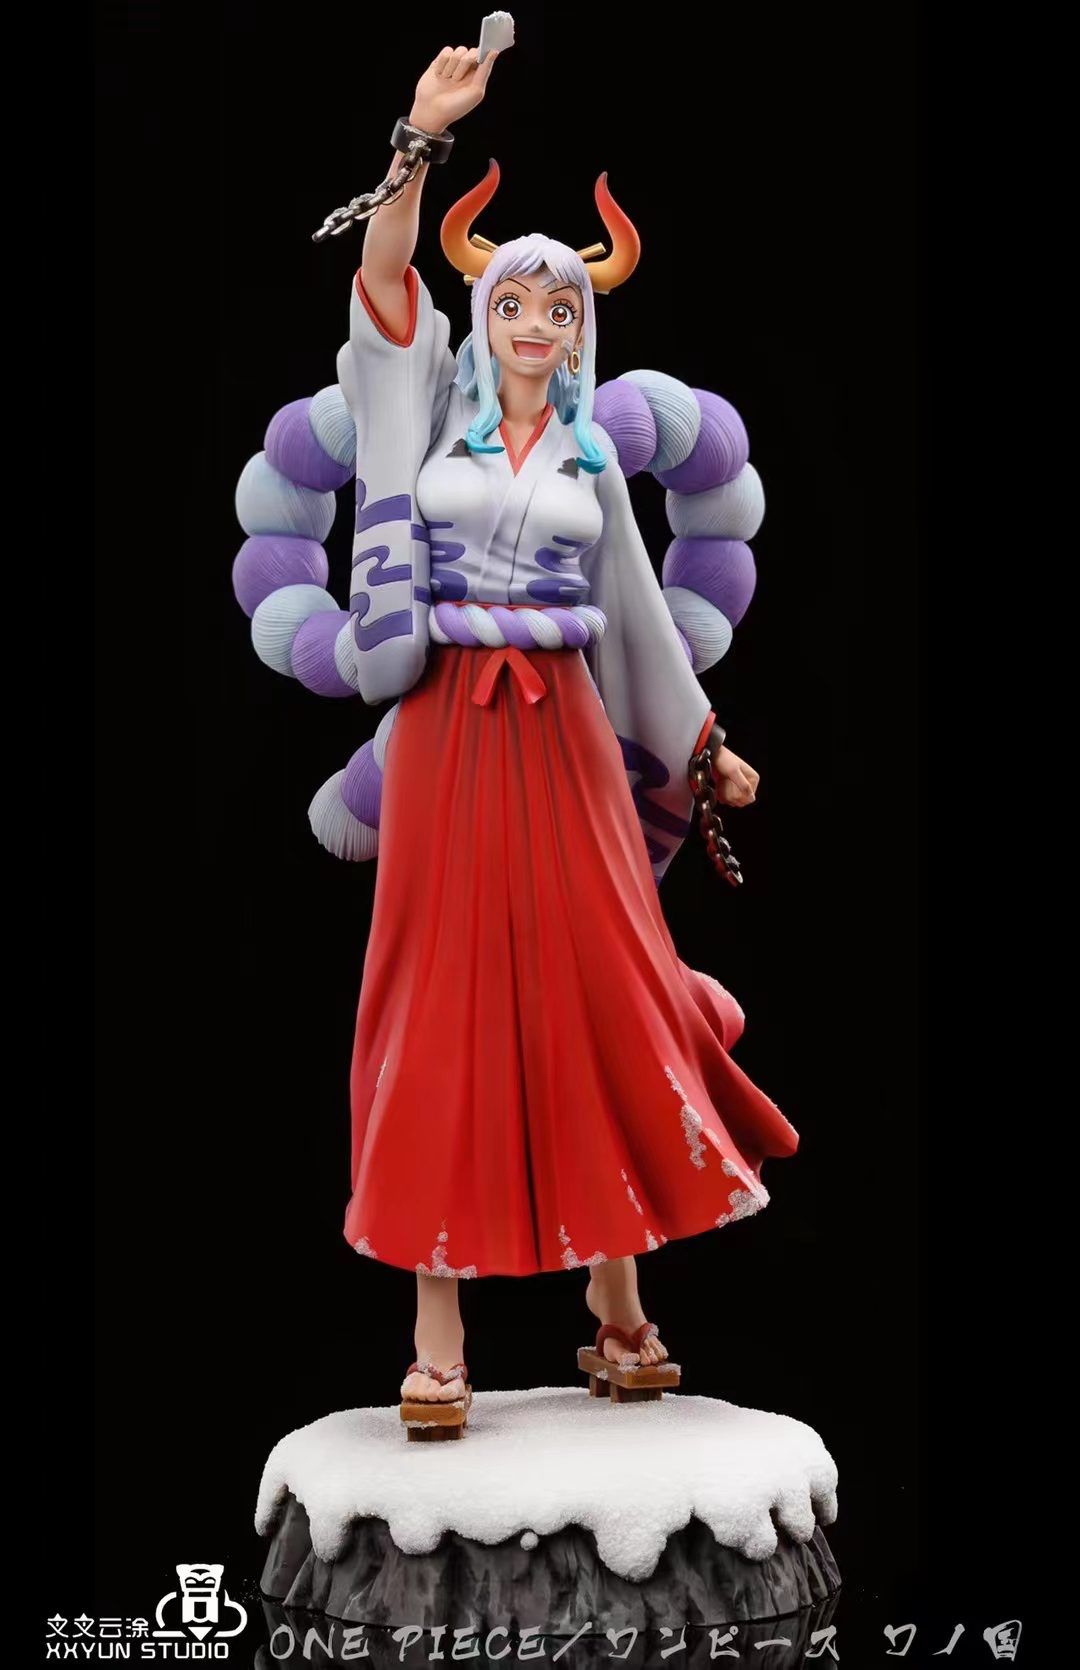 đồ chơi nhân vật  mô hình One Piece hình yamato One Piece cao 30cm   Shopee Việt Nam